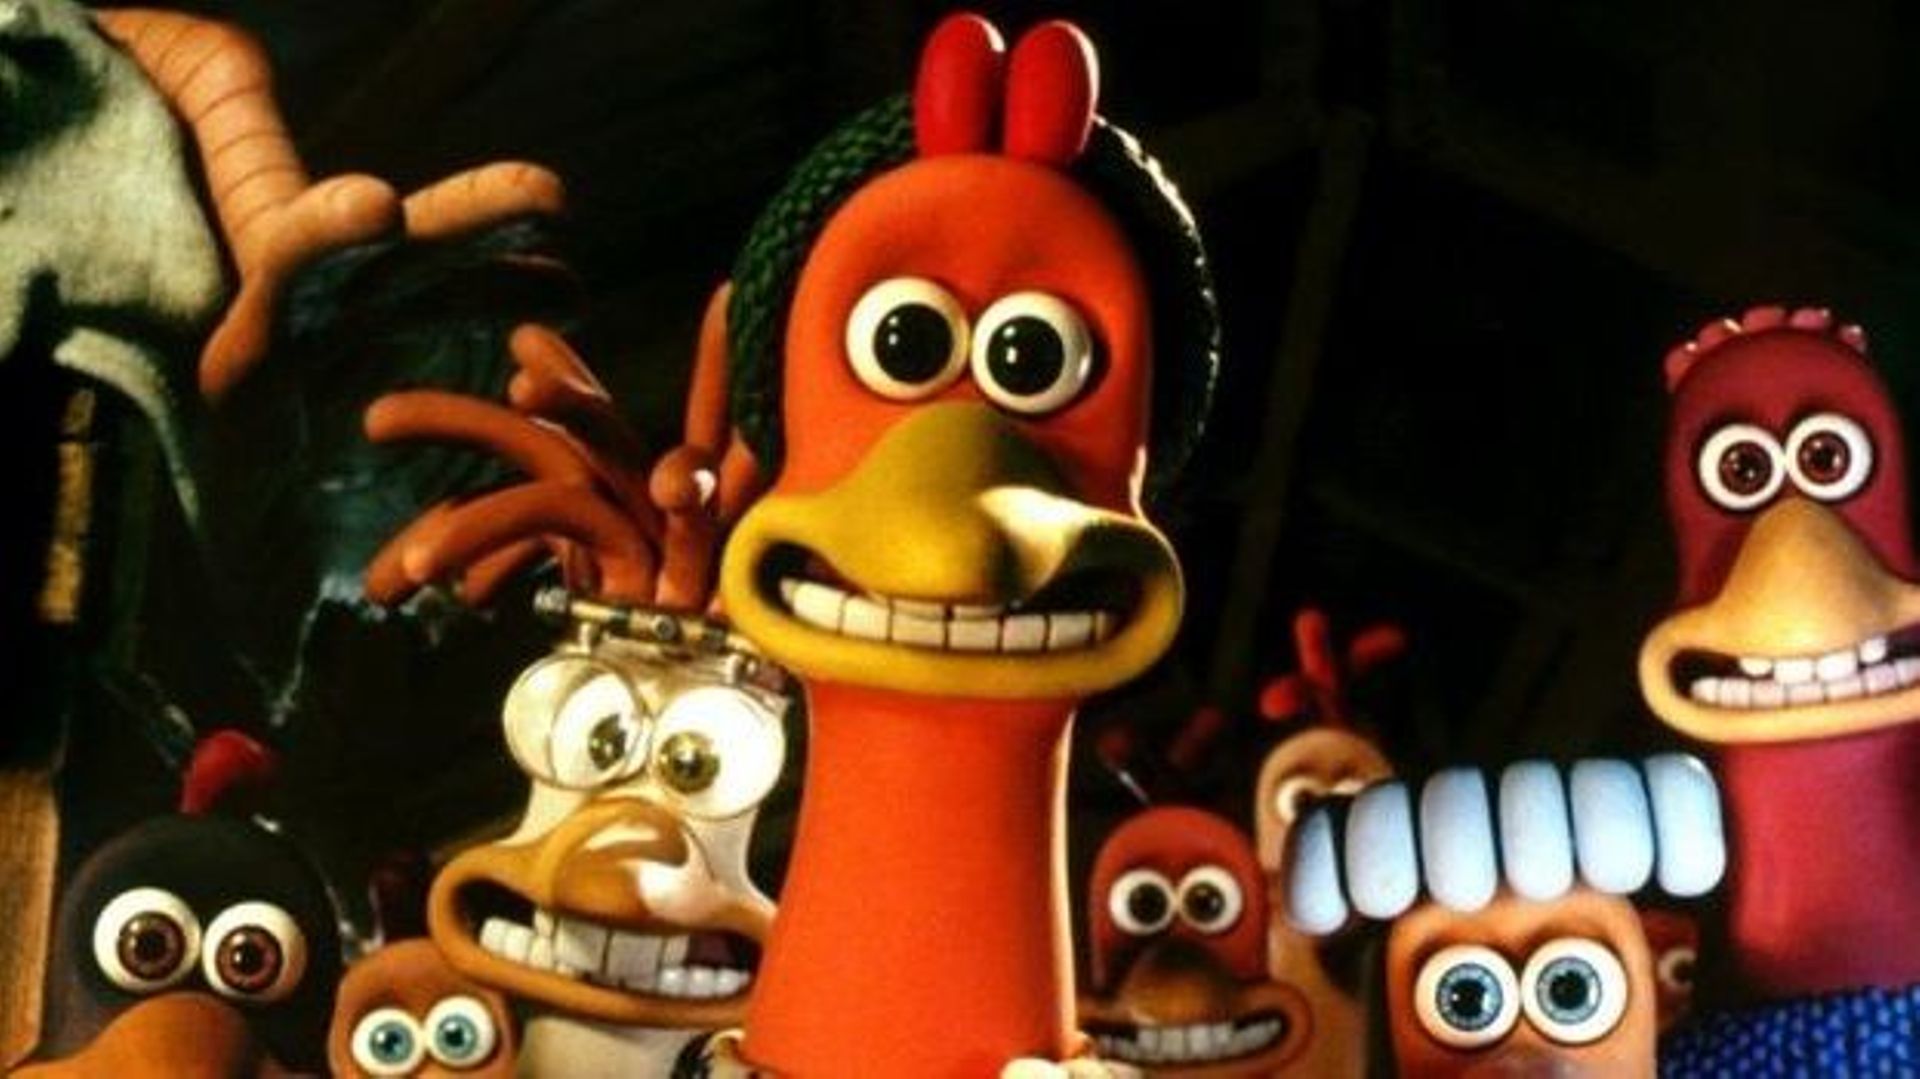 Dans le film "Chicken run", les poules ont des dents